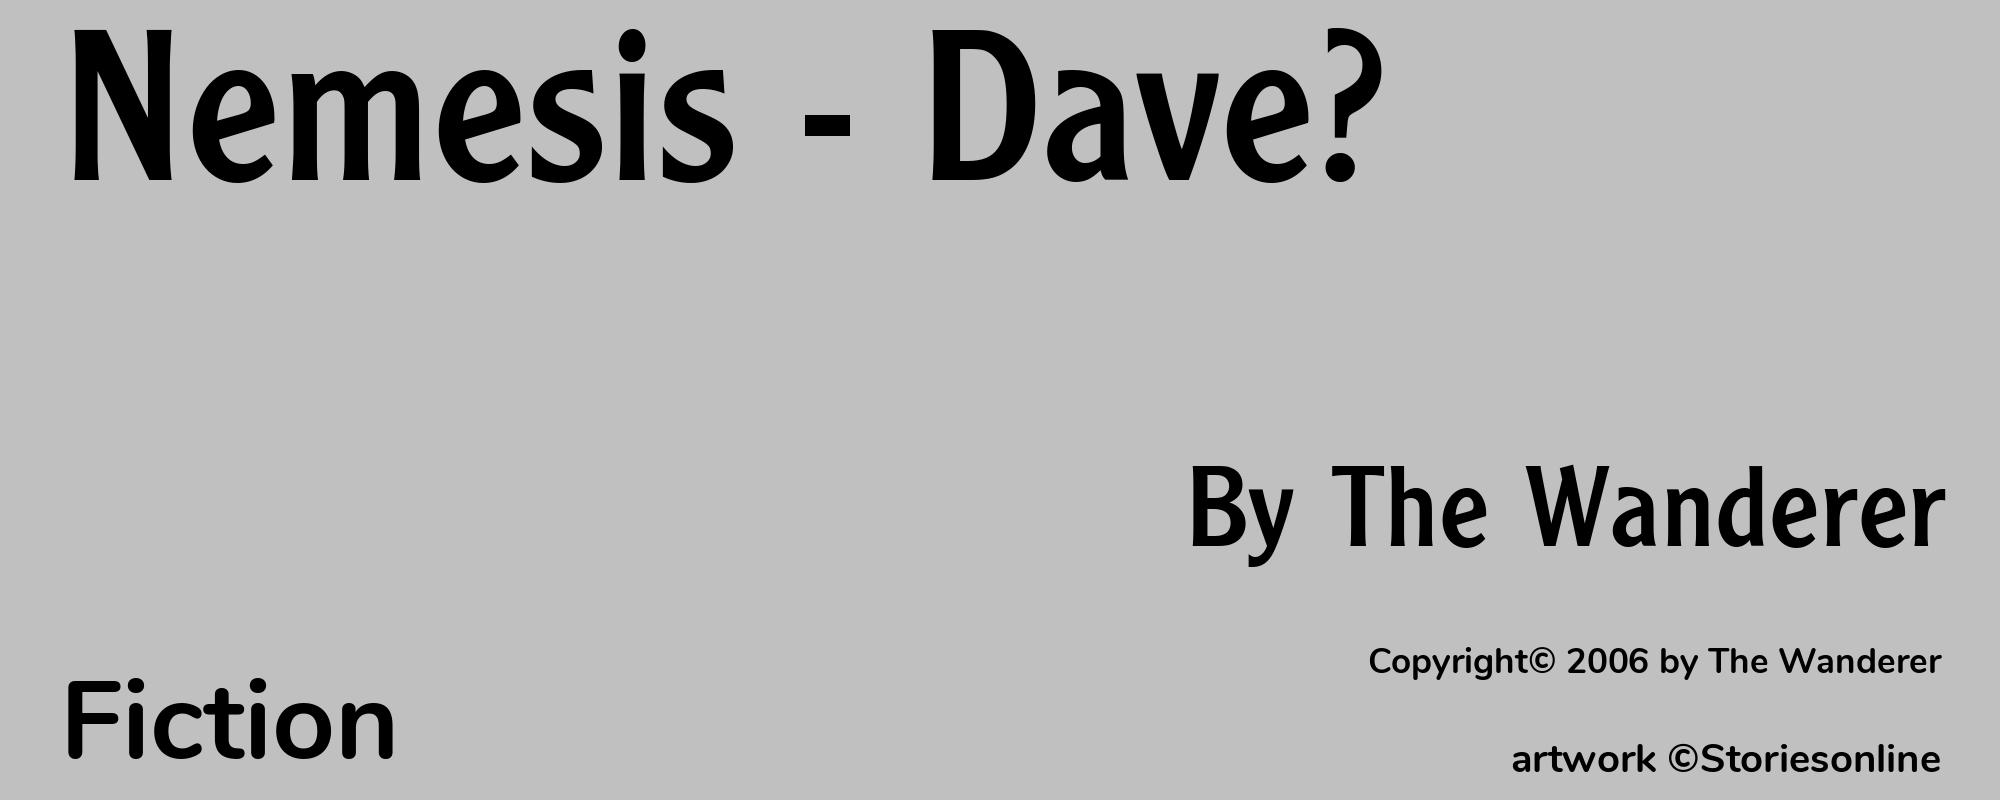 Nemesis - Dave? - Cover